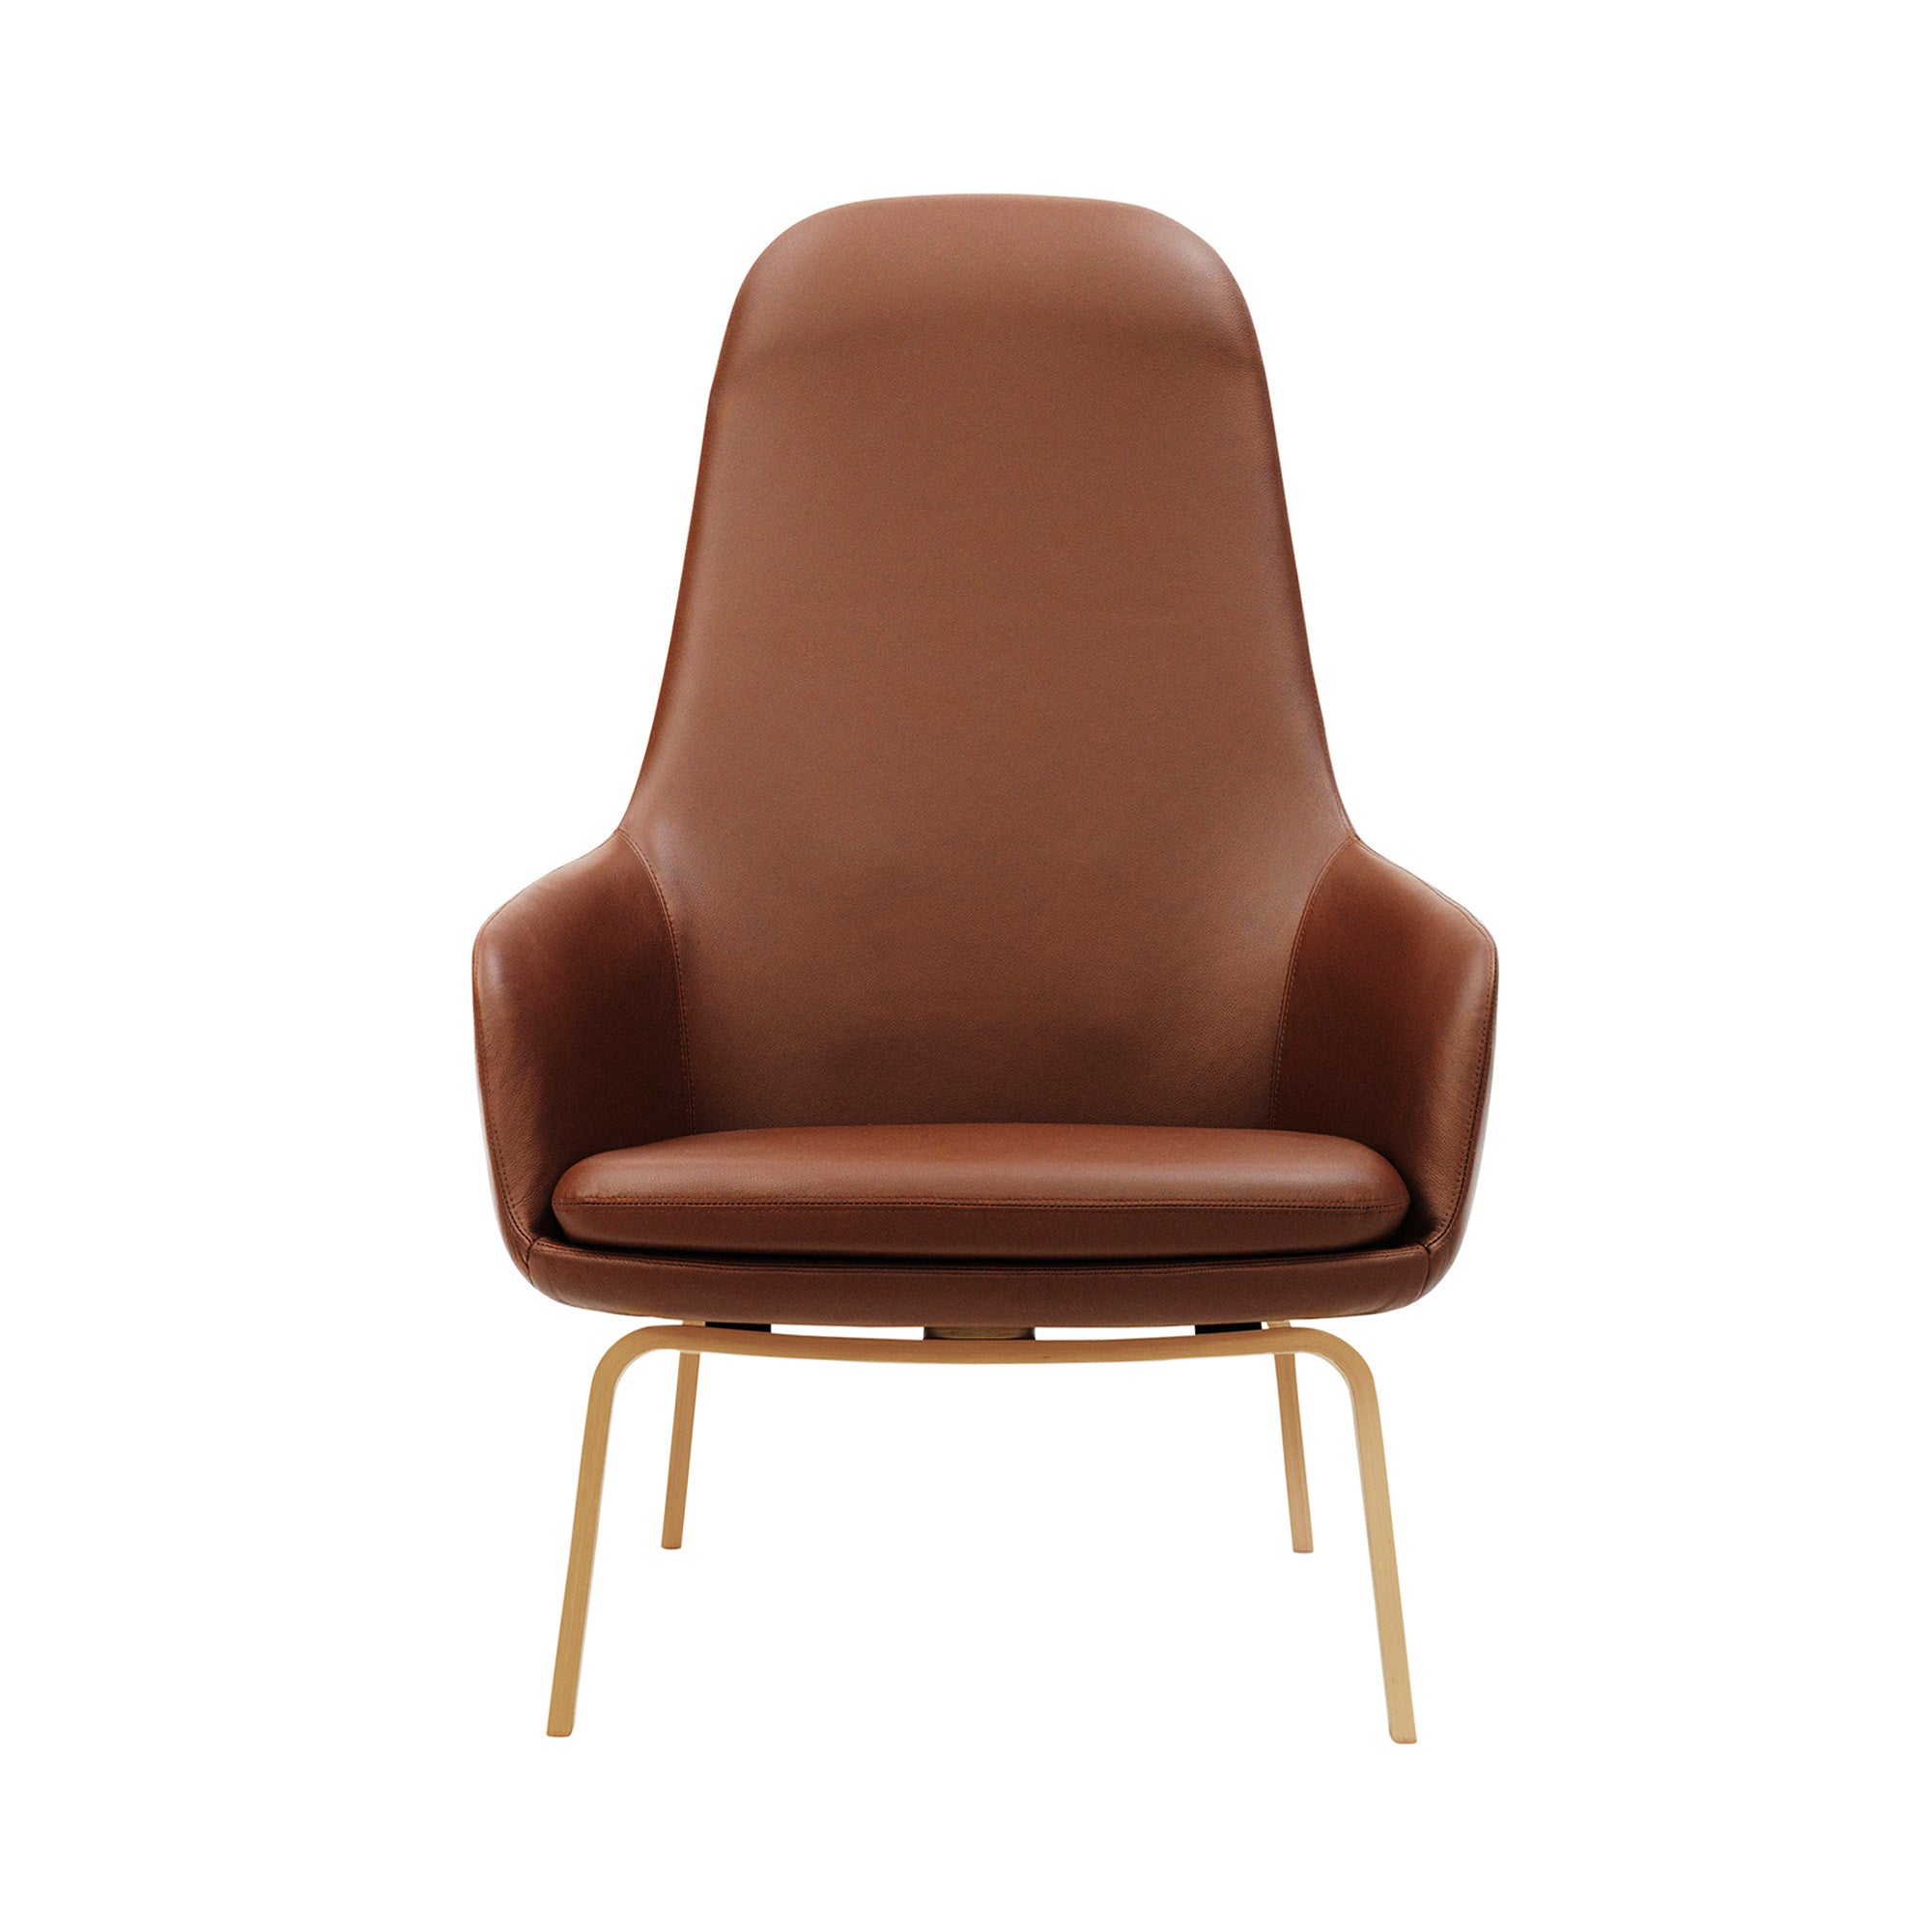 Era Lounge Chair: High + Wood Base + Oak